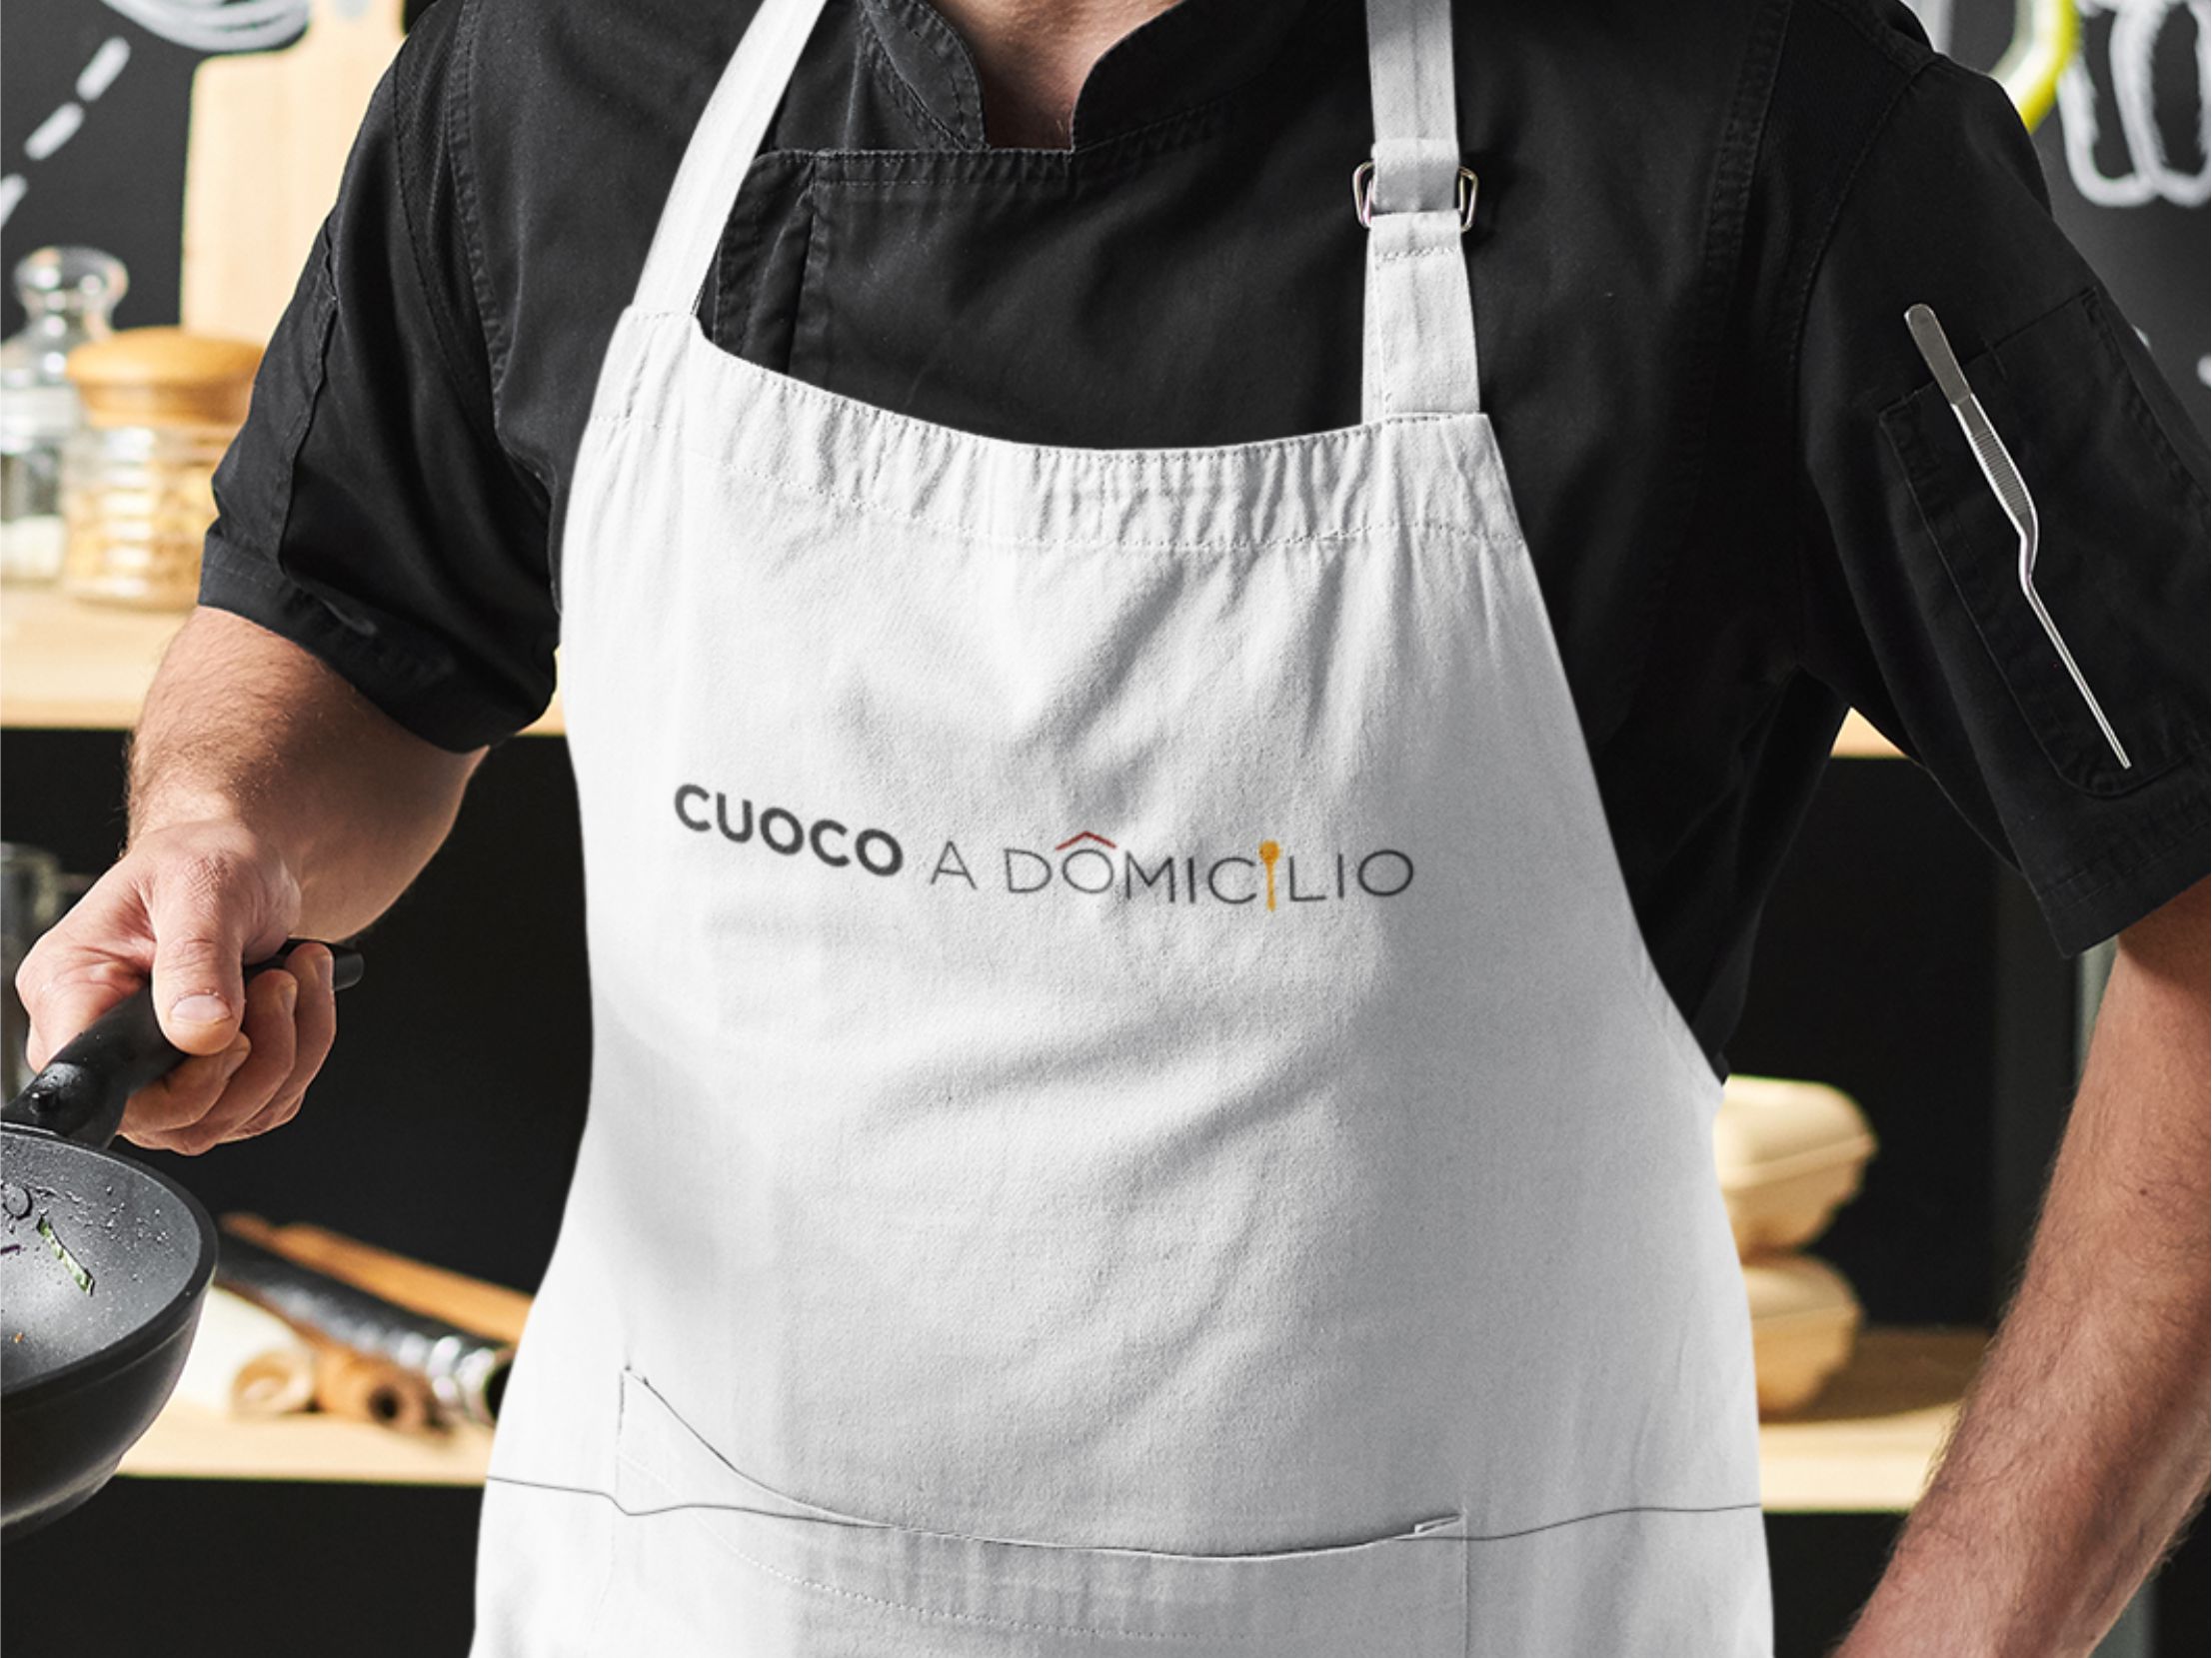 Giancarlo Cutuli cuoco a domicilio logo creazioni tipografia trastevere Roma social media siti web (7a)